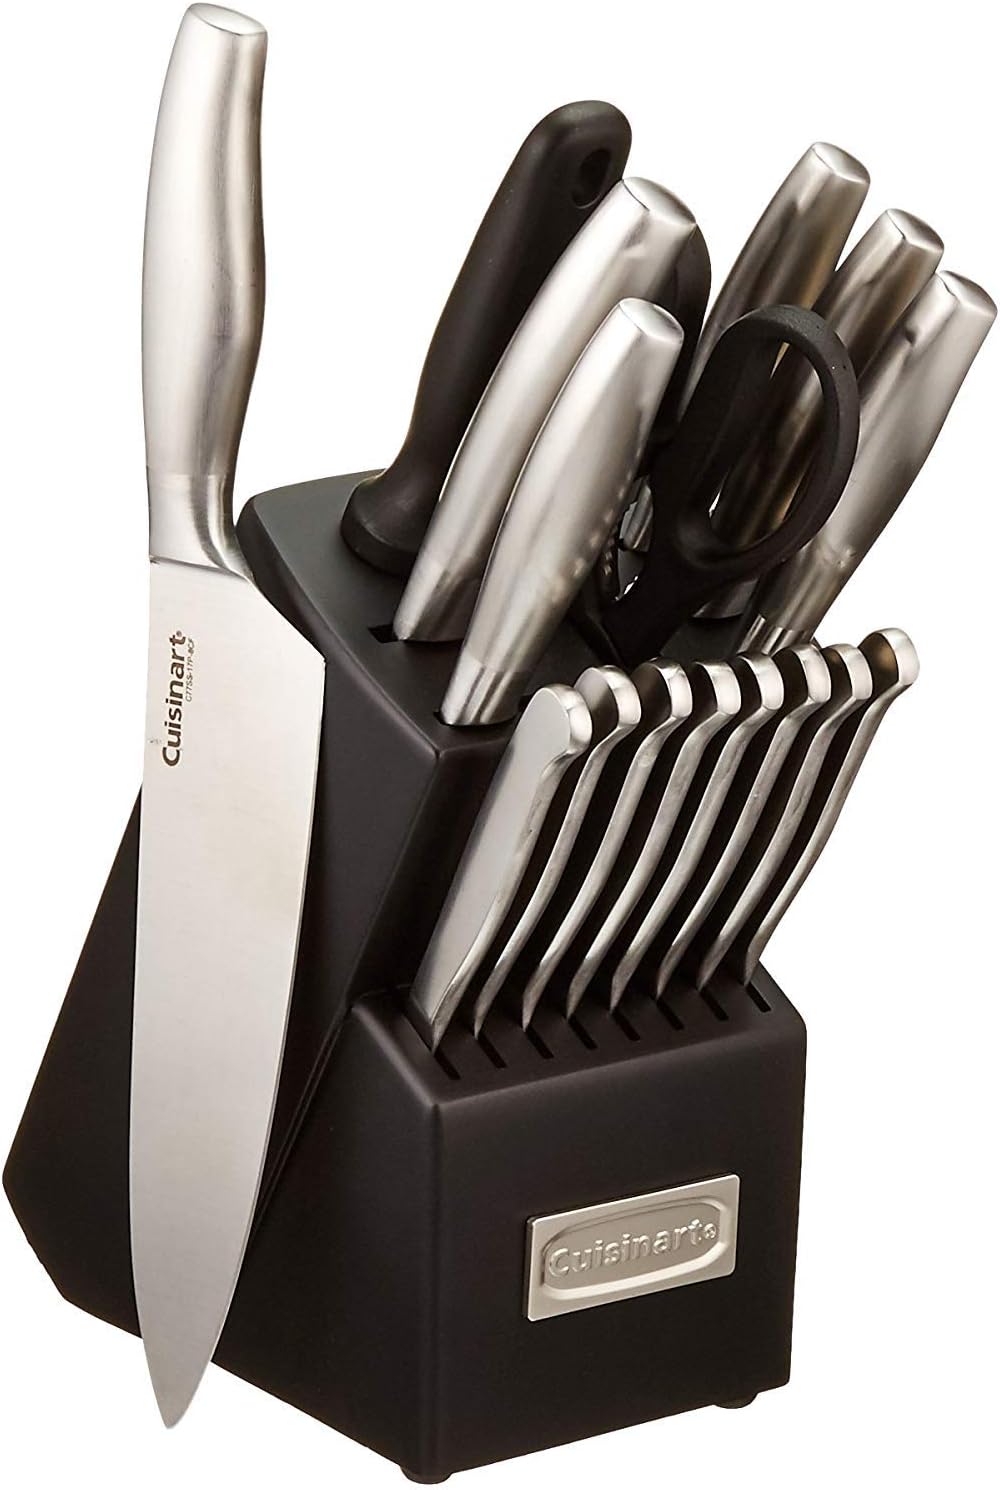 Comment choisir un set de couteaux de cuisine ?